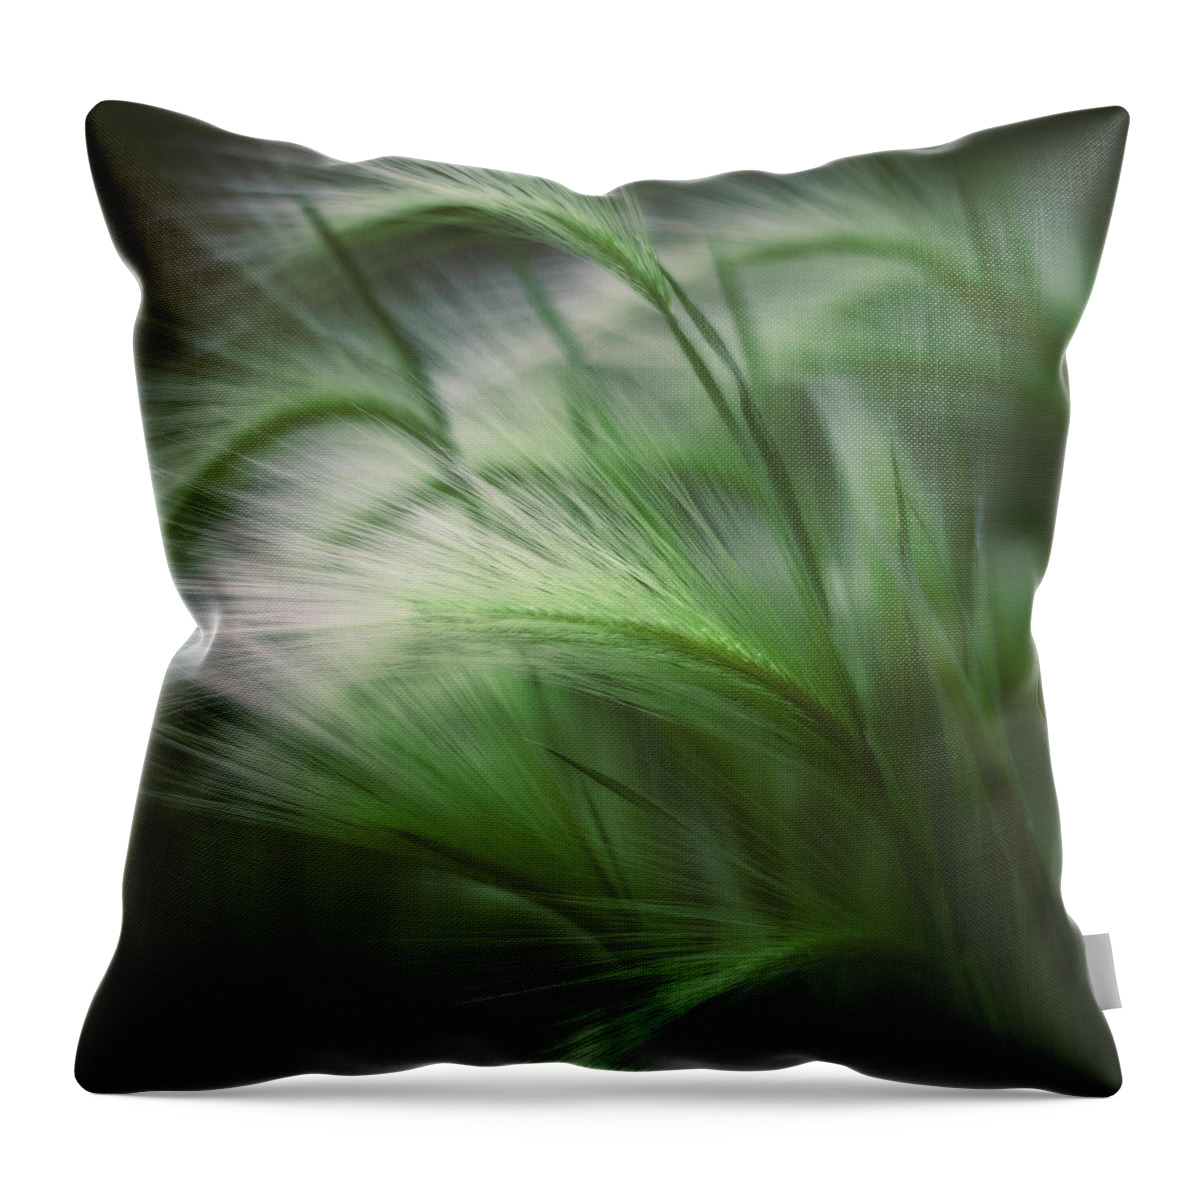 Grass Throw Pillow featuring the photograph Soft Grass by Scott Norris